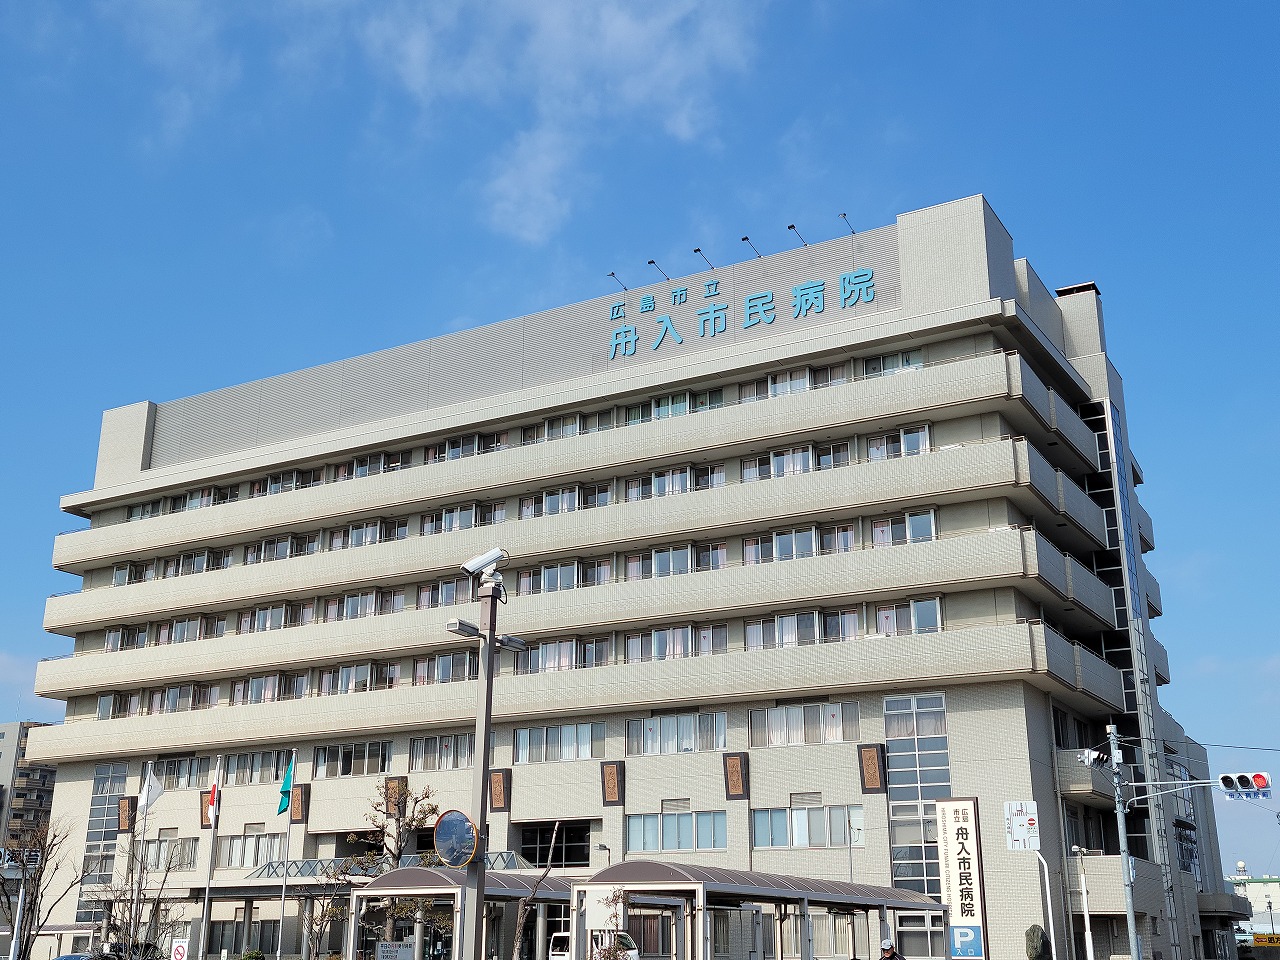 広島市立舟入市民病院 電話設備工事